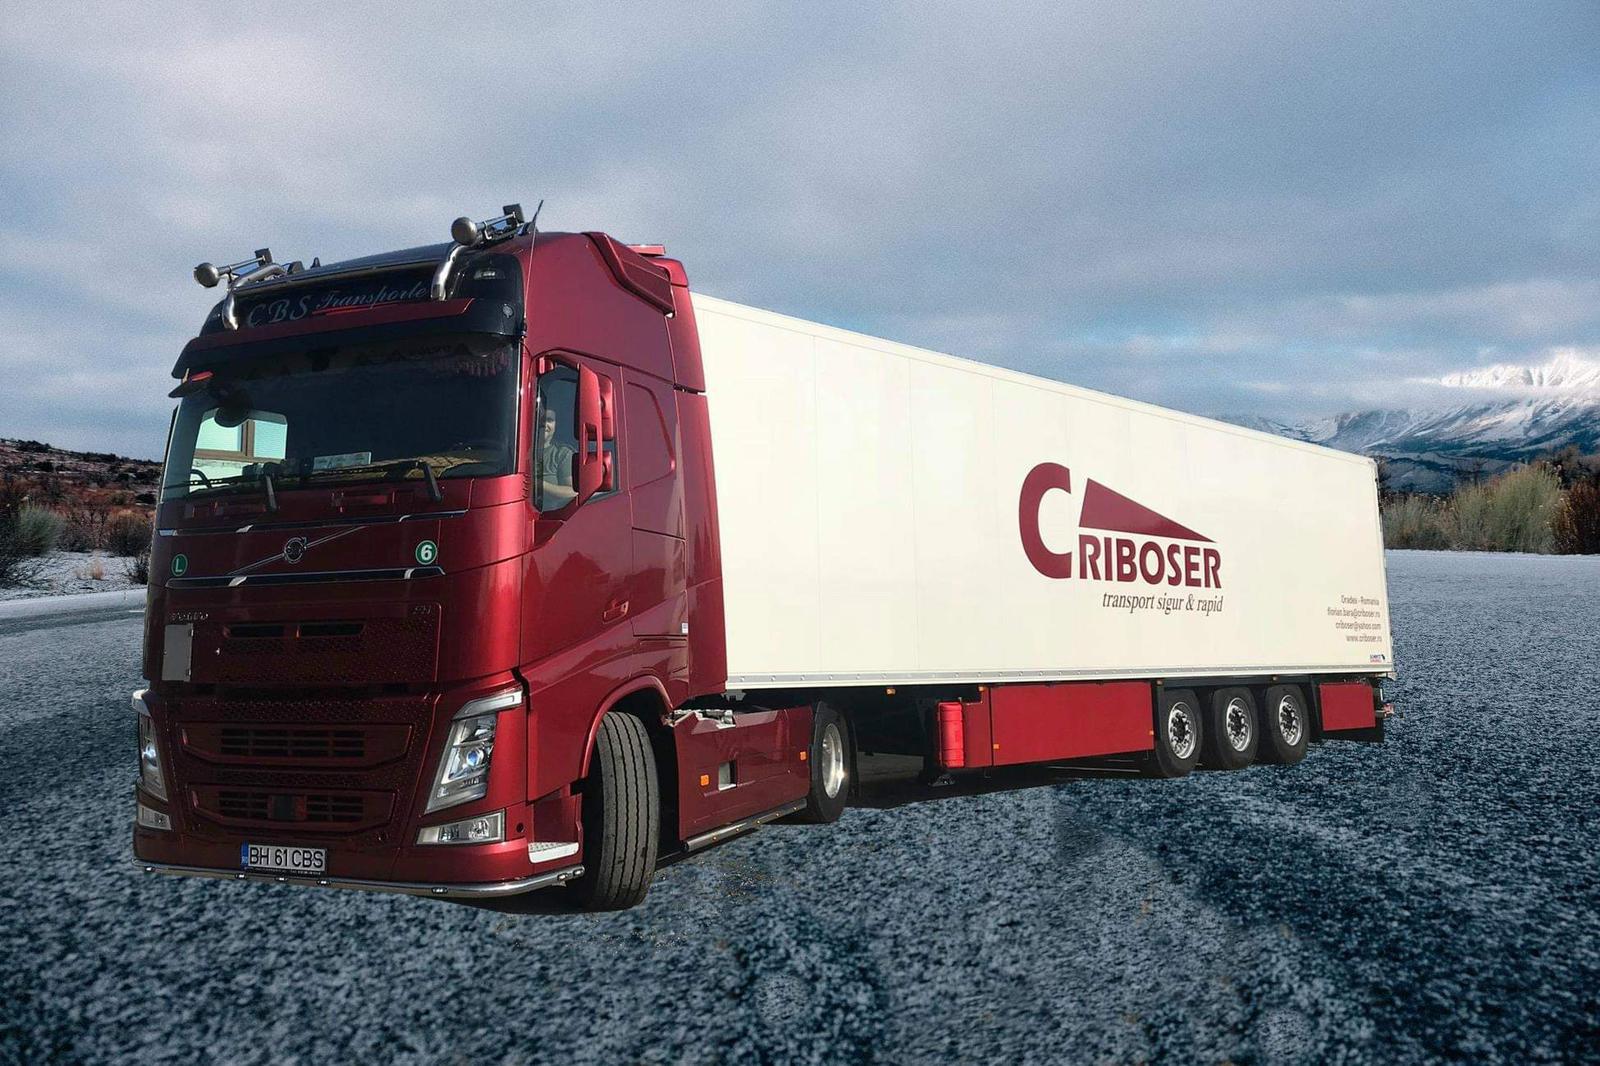 Criboser din Oradea, al doilea cel mai dinamic transportator rutier de mărfuri: „Avem de lucru, am mai cumpărat 20 de camioane şi aducem mărfuri în principal din Belgia, Germania şi Olanda“. Transportatorul fondat în 2006 şi controlat de Florian Bara şi soţia lui a ajuns la afaceri de 30 mil. euro.